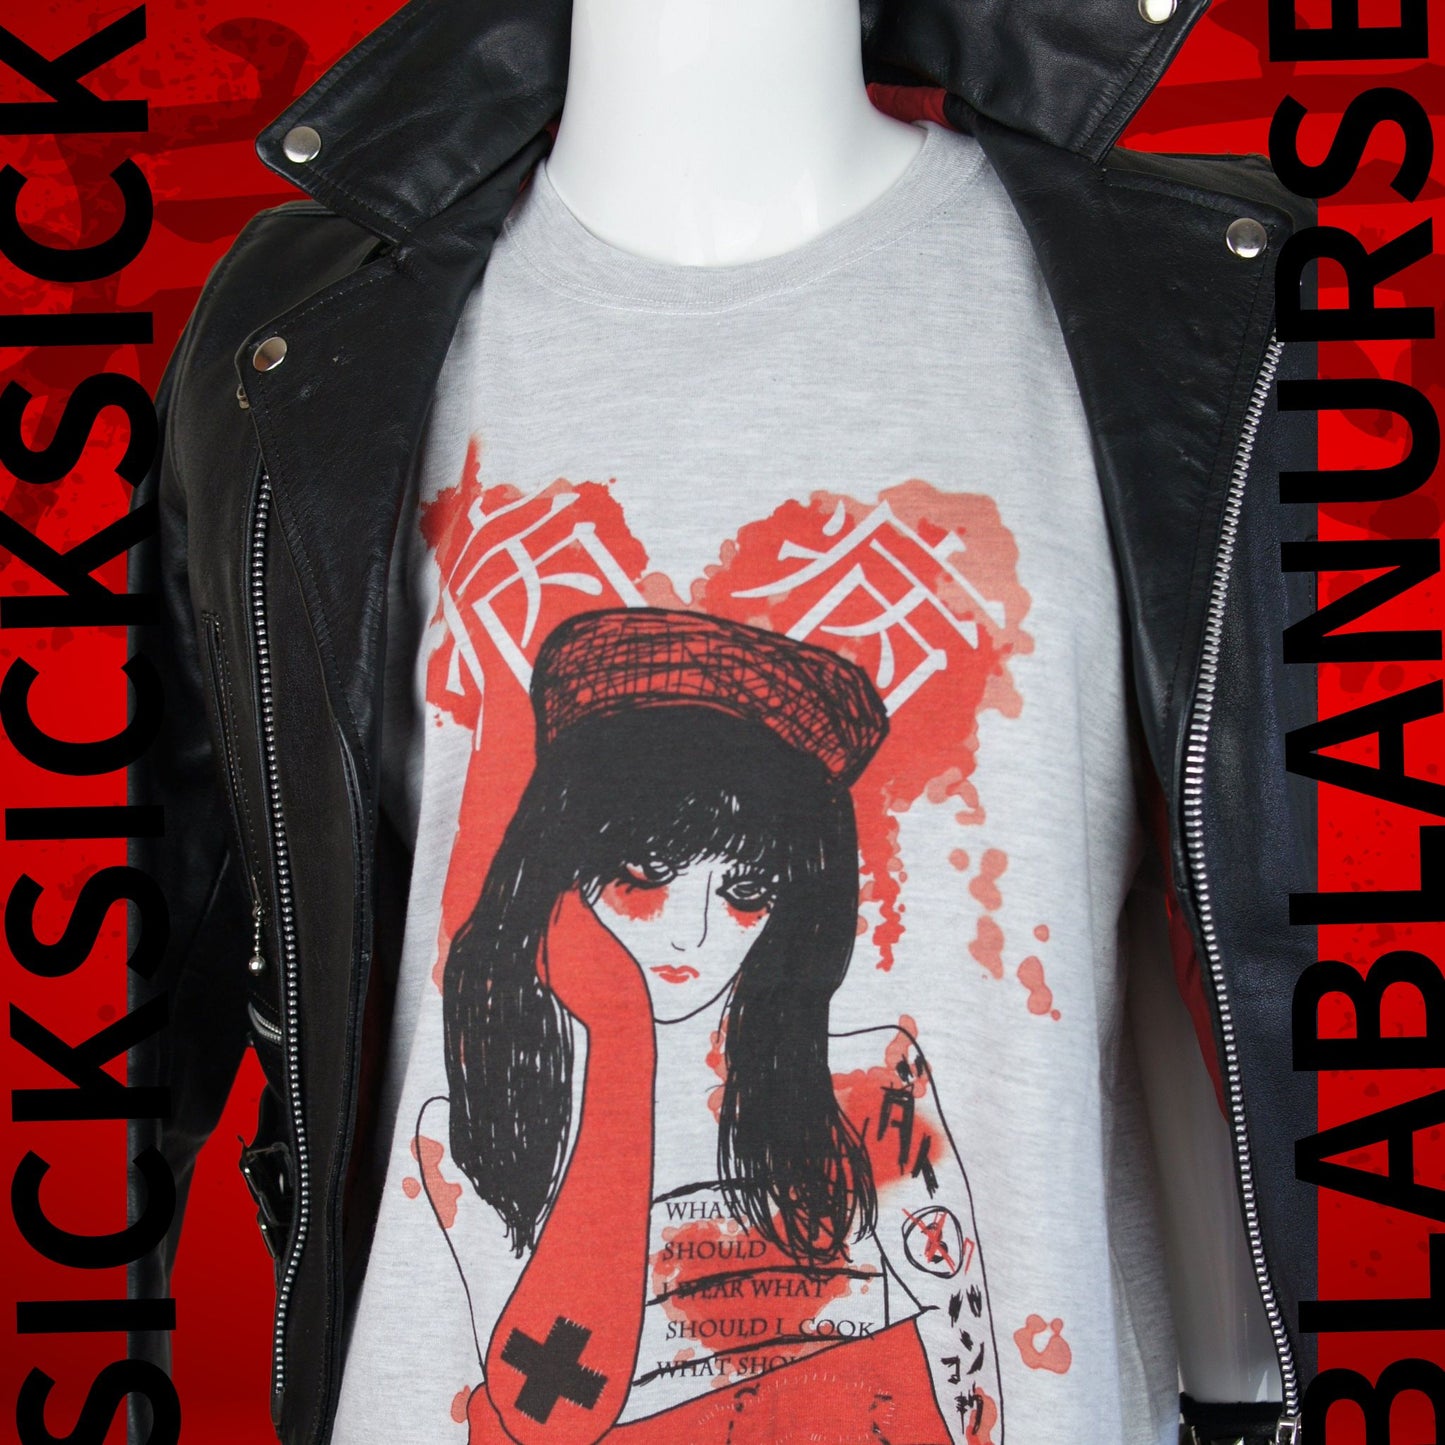 Die Krankenschwester KRANK! KRANK! Bedrucktes graues T-Shirt japanische Yamikawaii-Punkmode